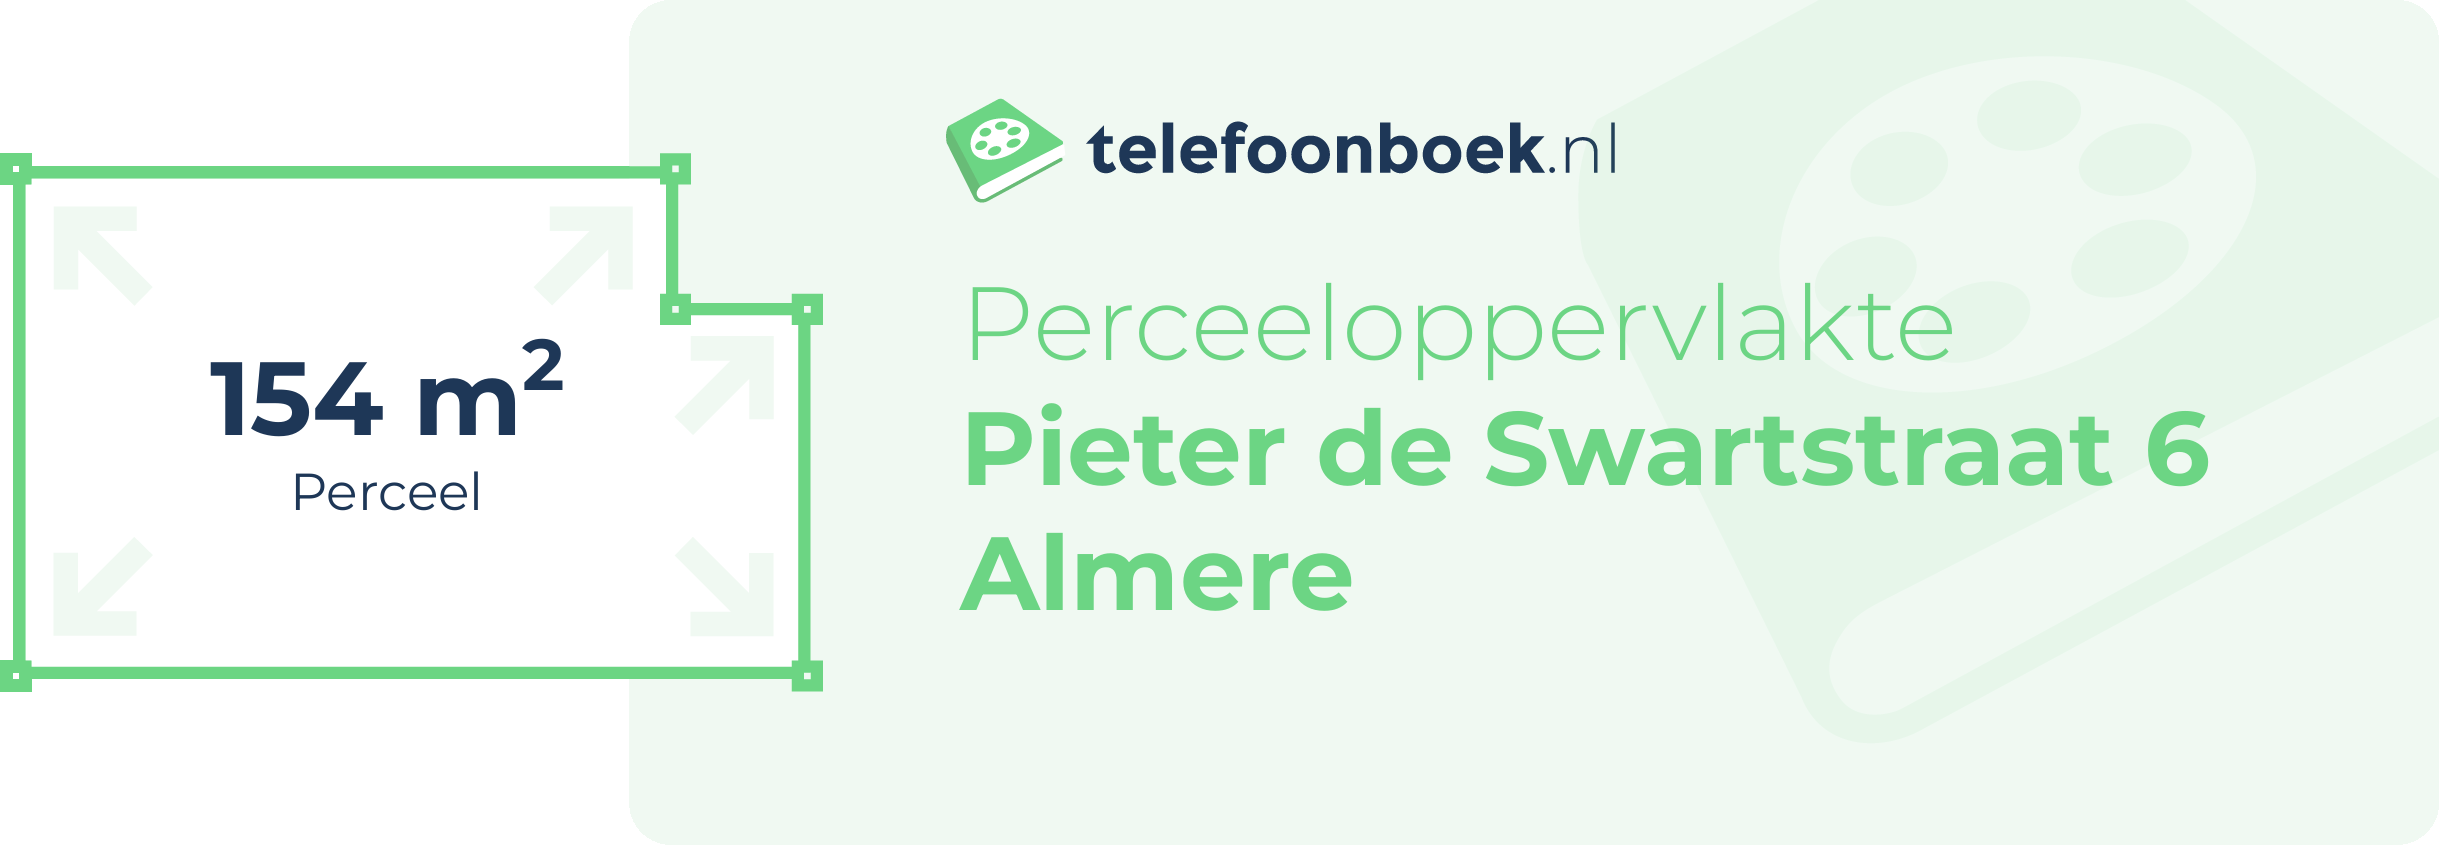 Perceeloppervlakte Pieter De Swartstraat 6 Almere